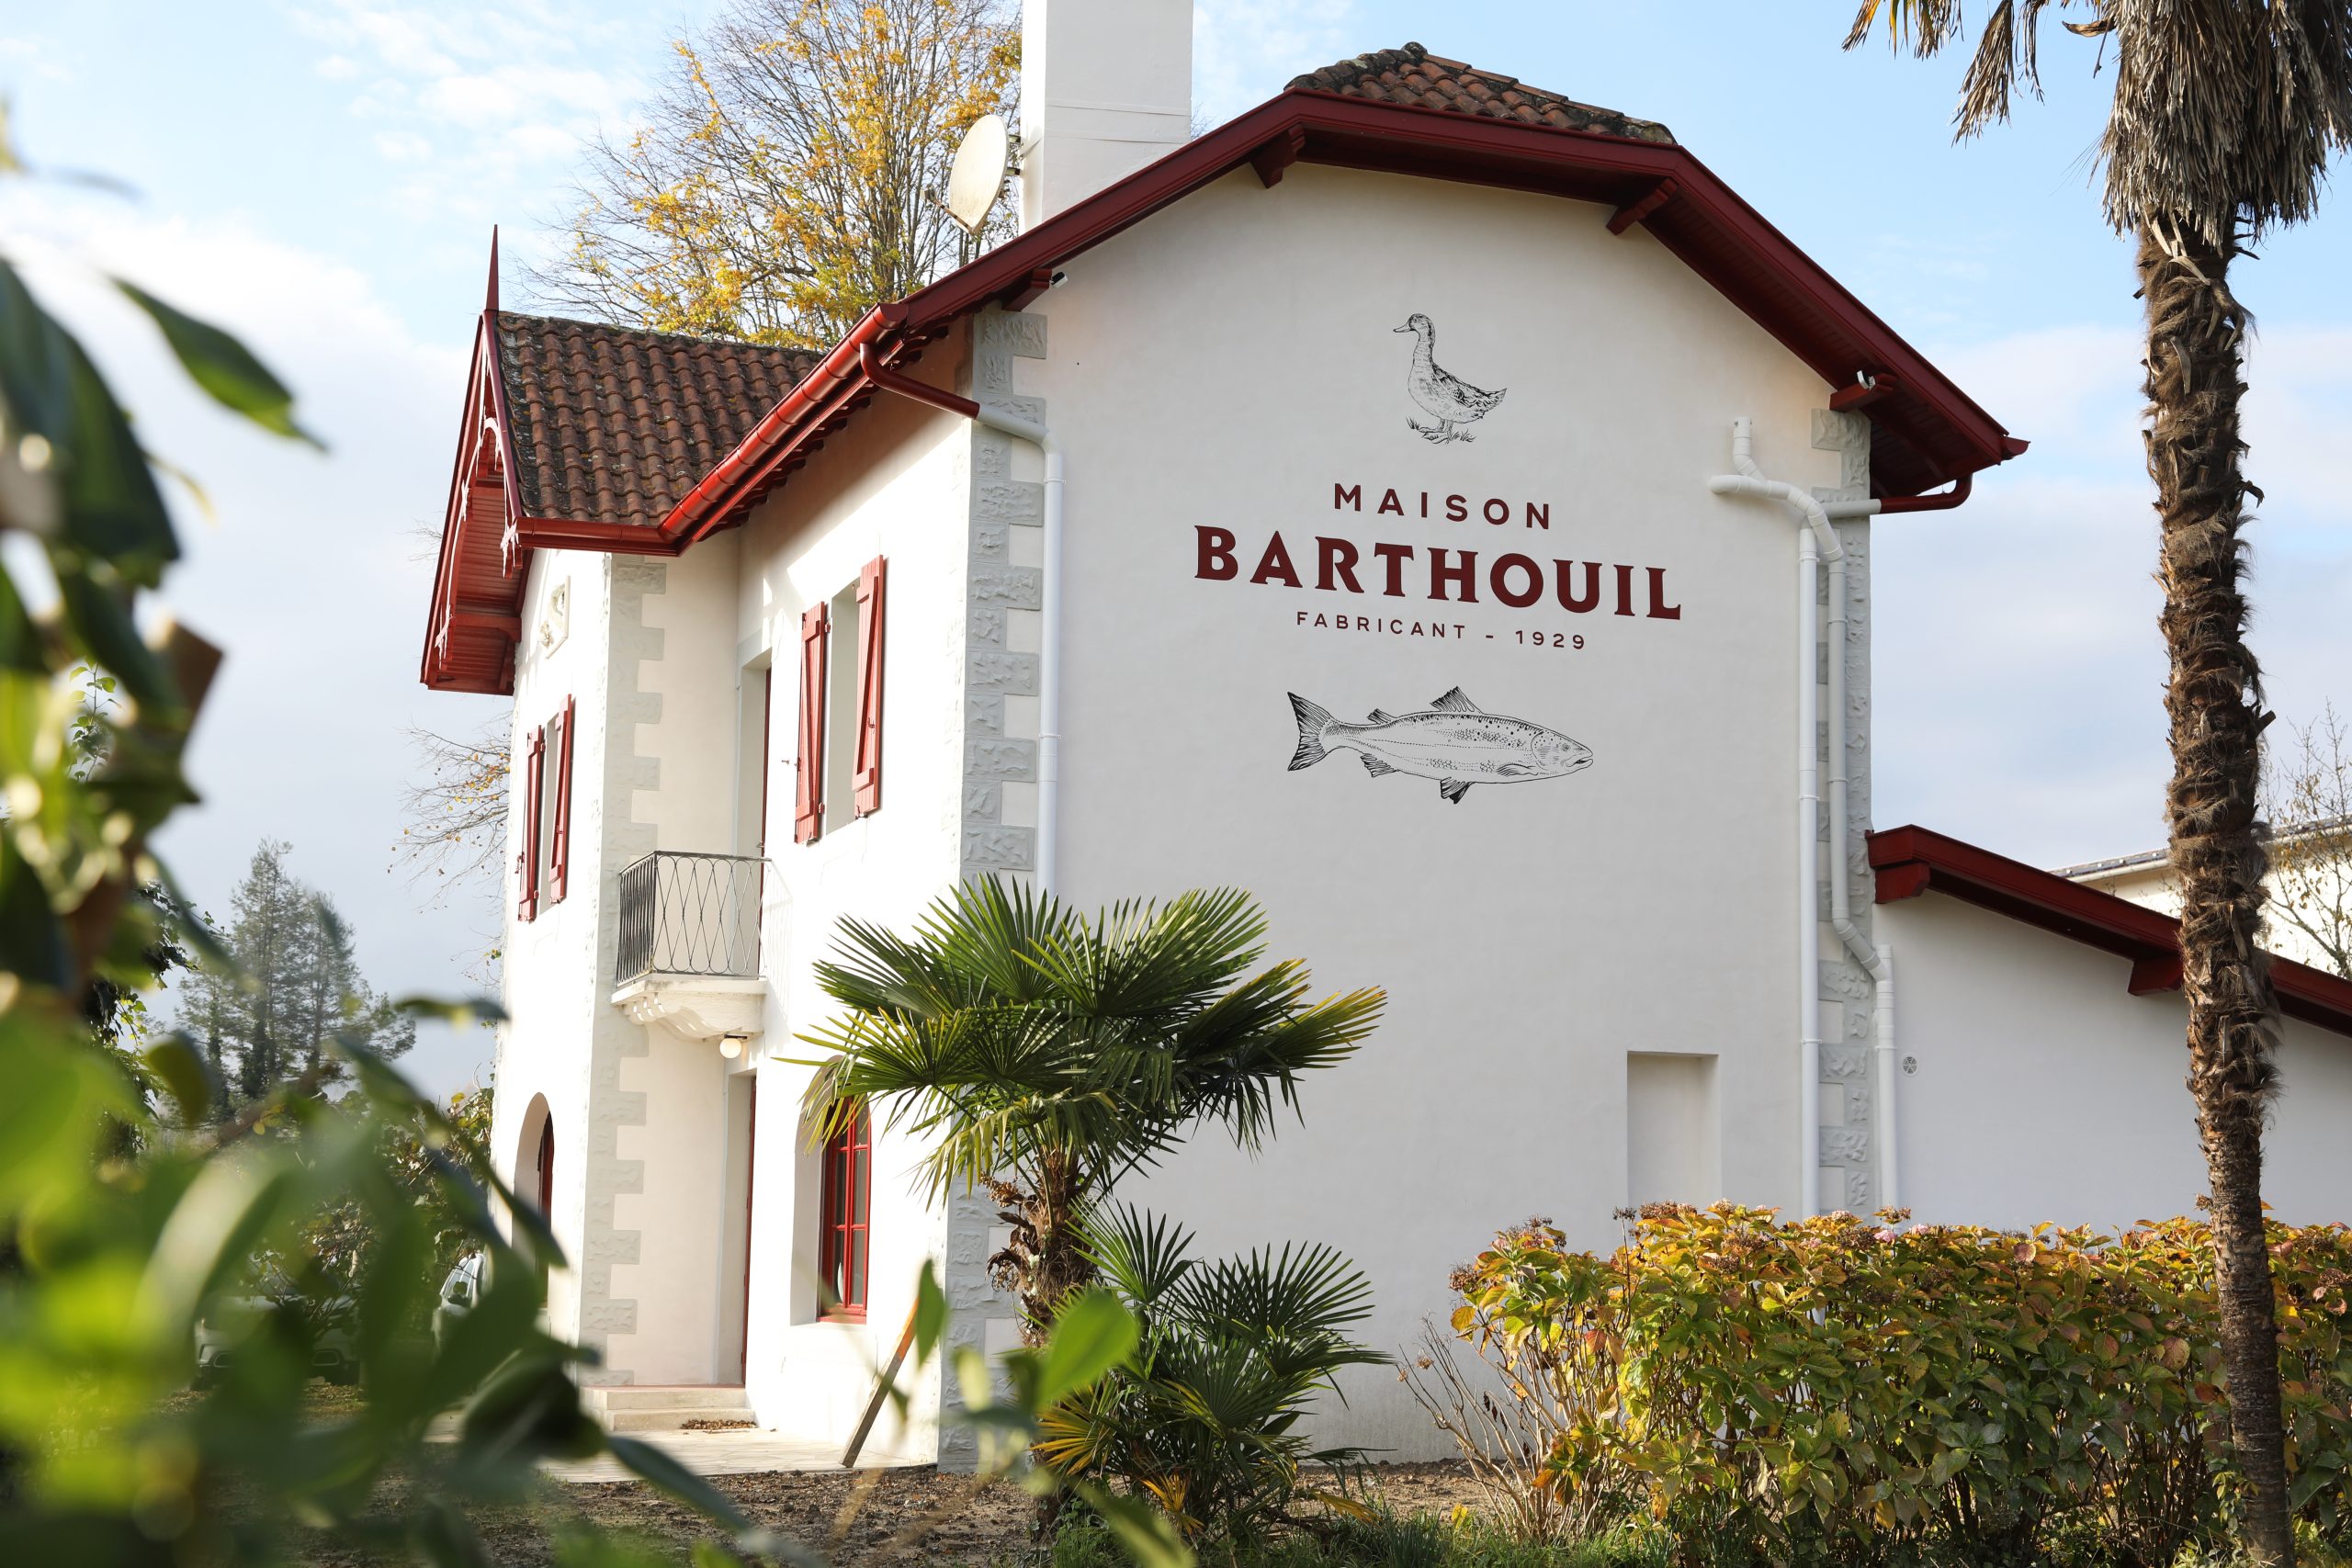 Maison Barthouil